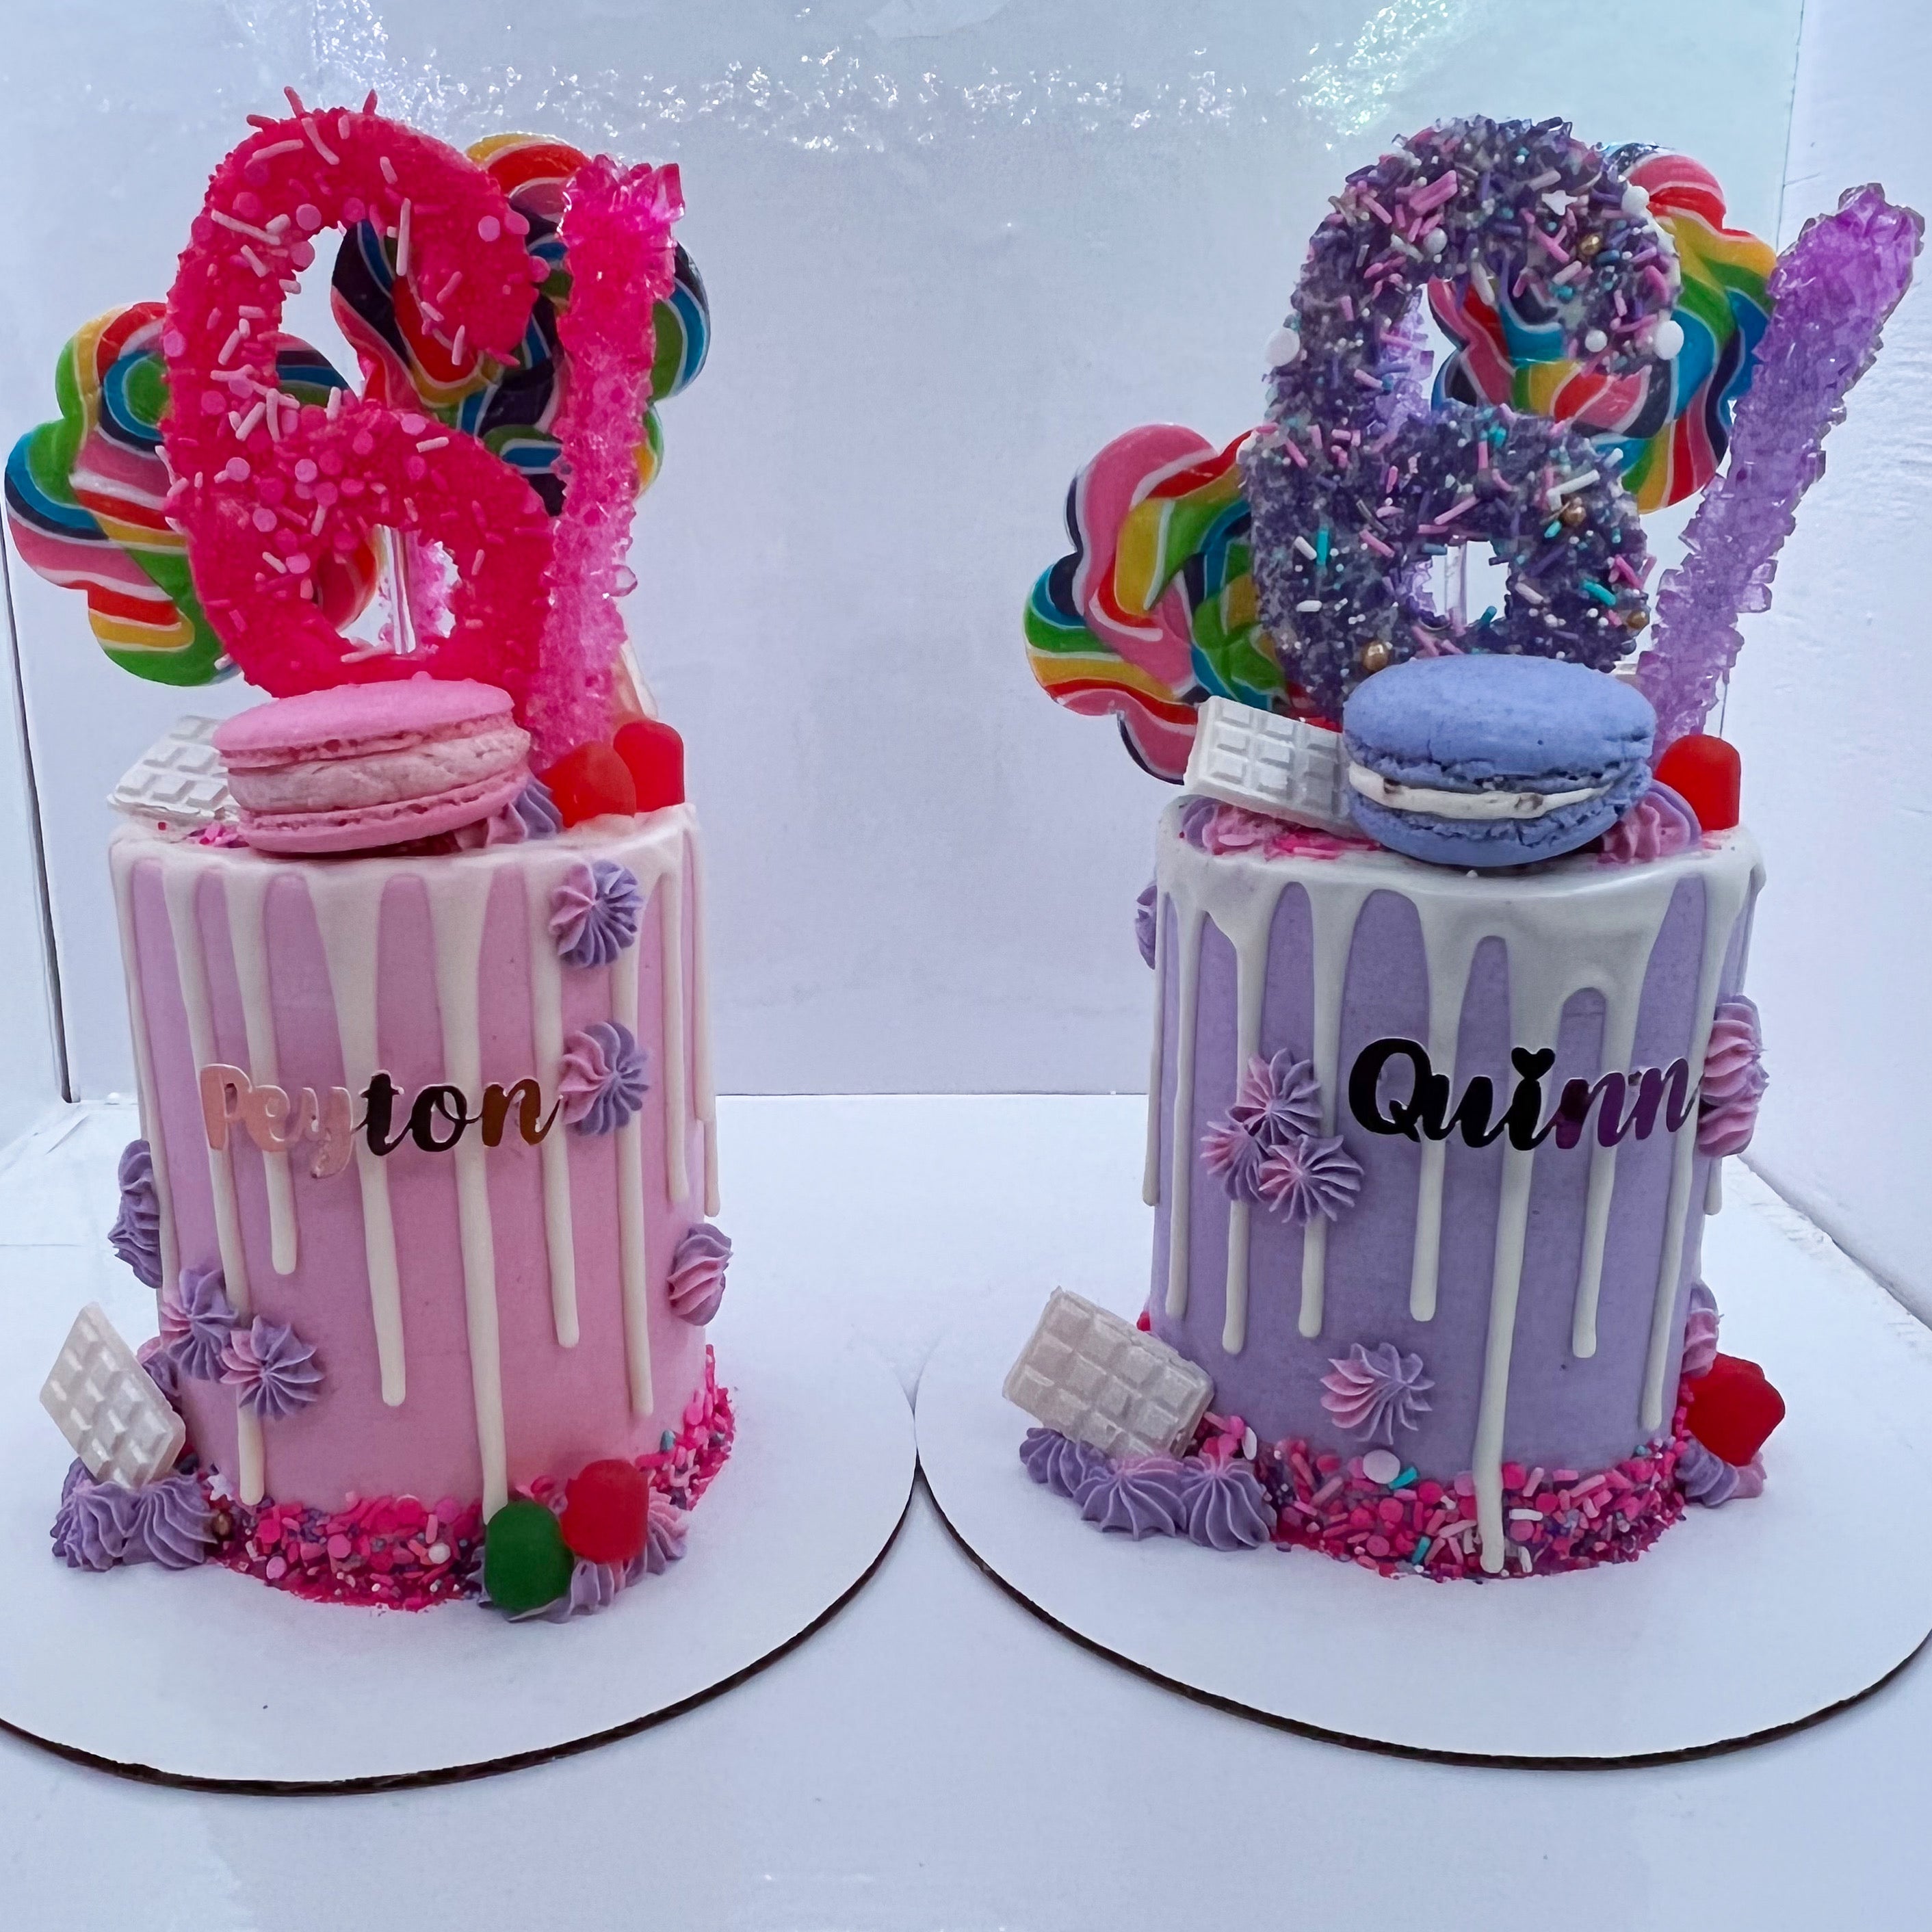 Creative cakes